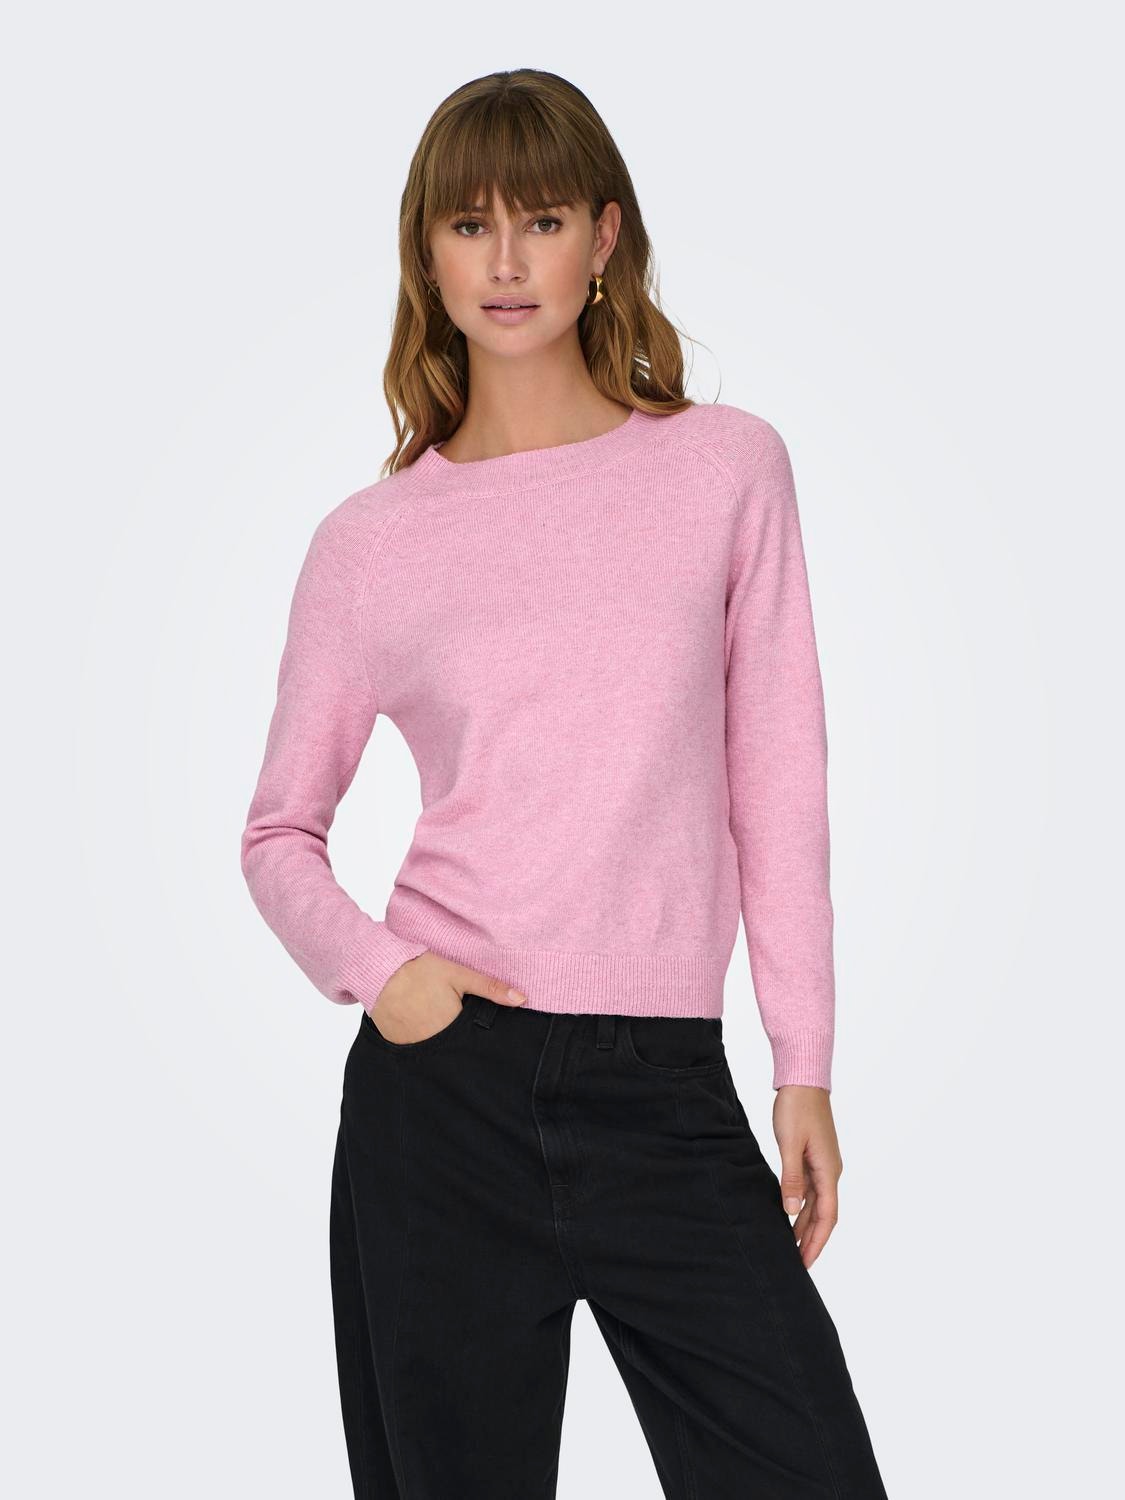 ONLY Rundhals Gerippte Ärmelbündchen Pullover -Prism Pink - 15204279